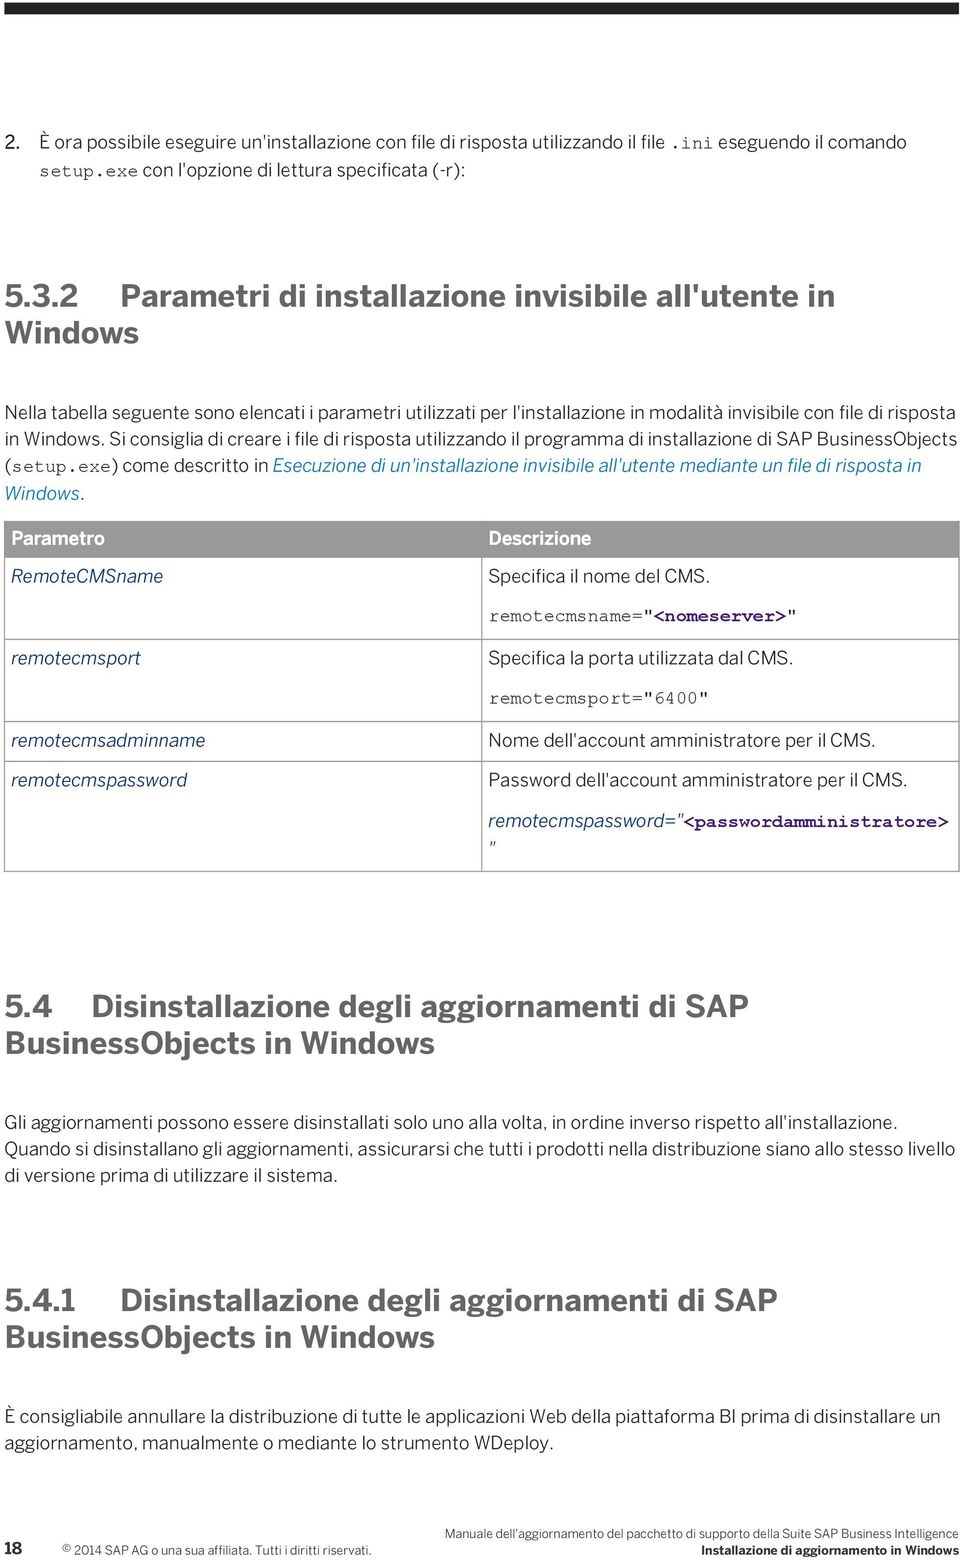 Si consiglia di creare i file di risposta utilizzando il programma di installazione di SAP BusinessObjects (setup.